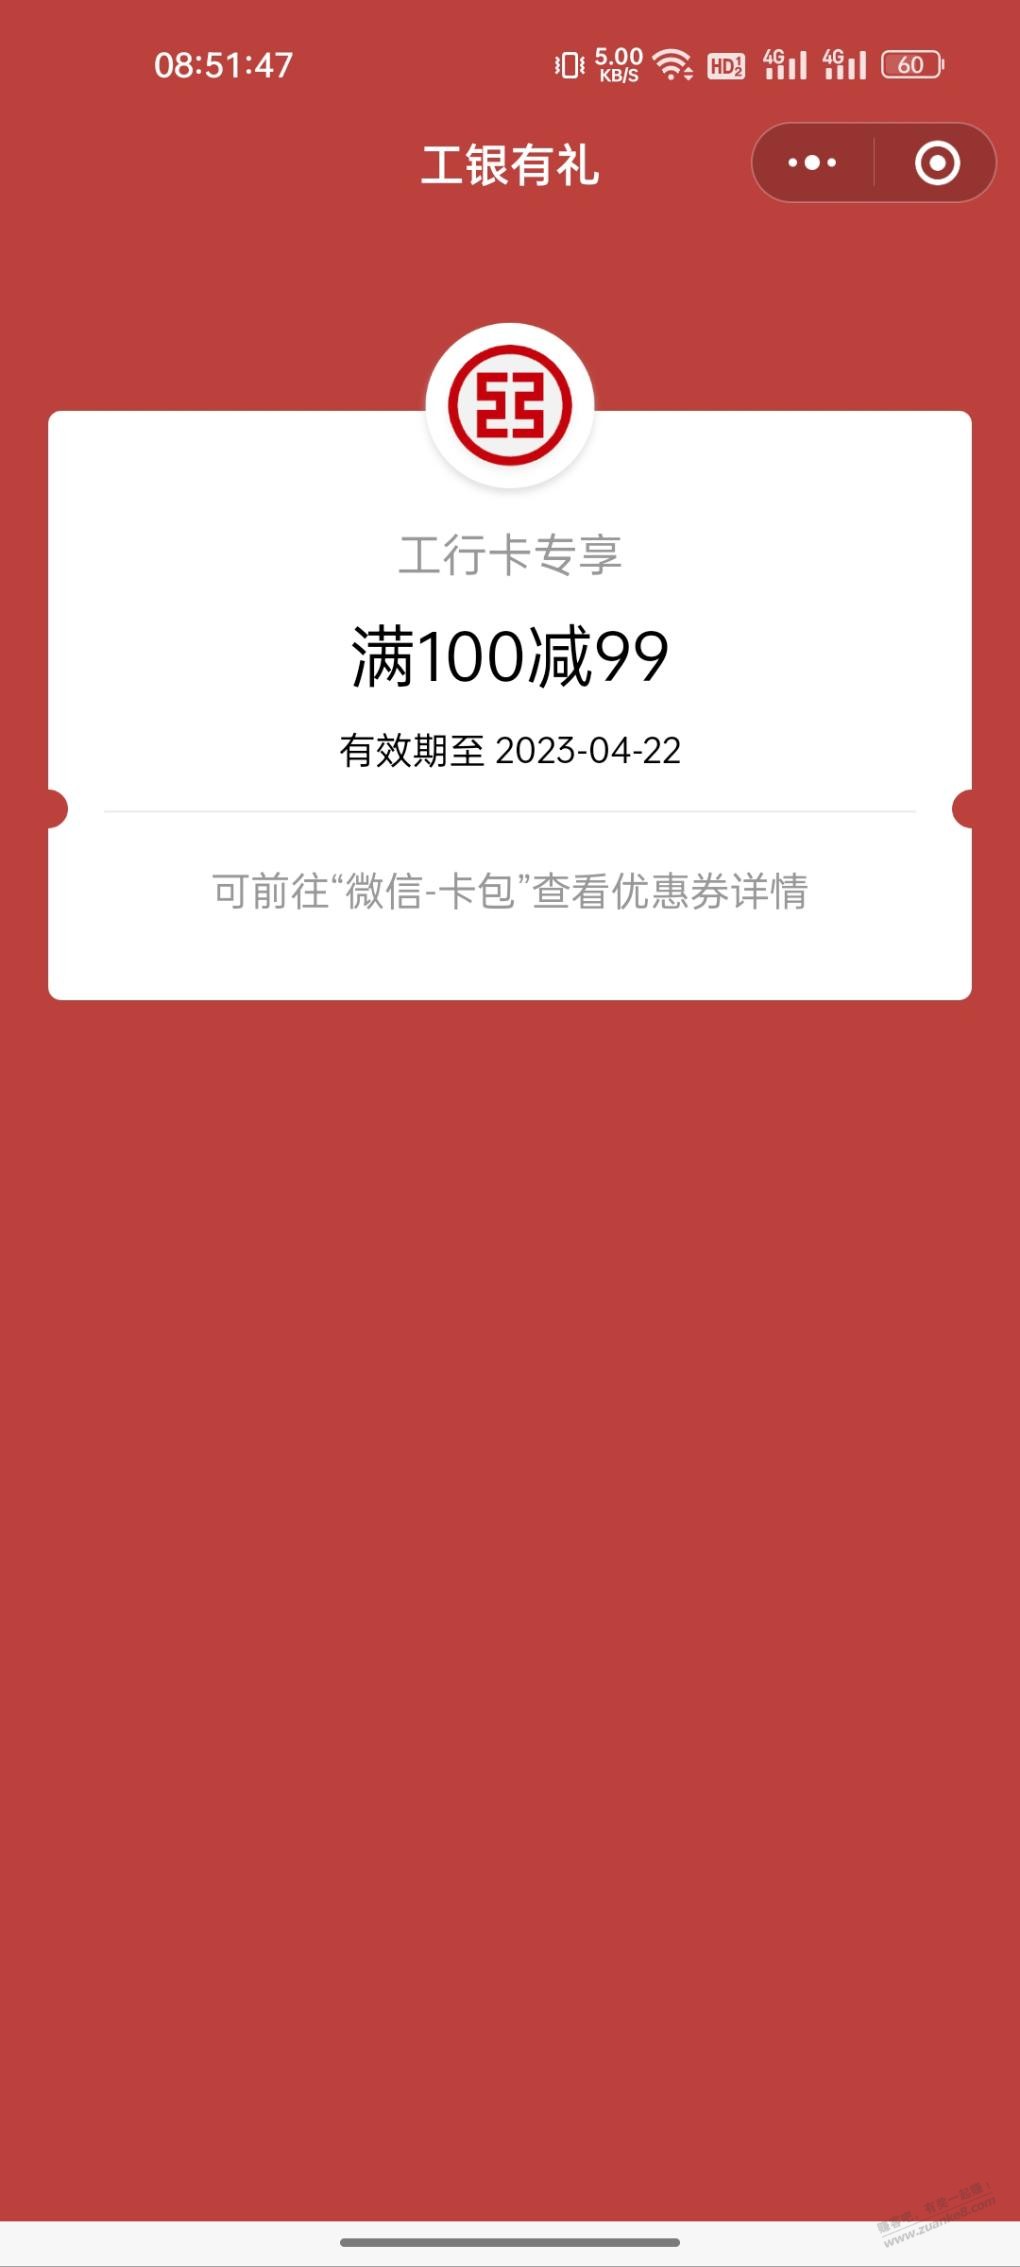 工行春日超级大水-100-99-惠小助(52huixz.com)